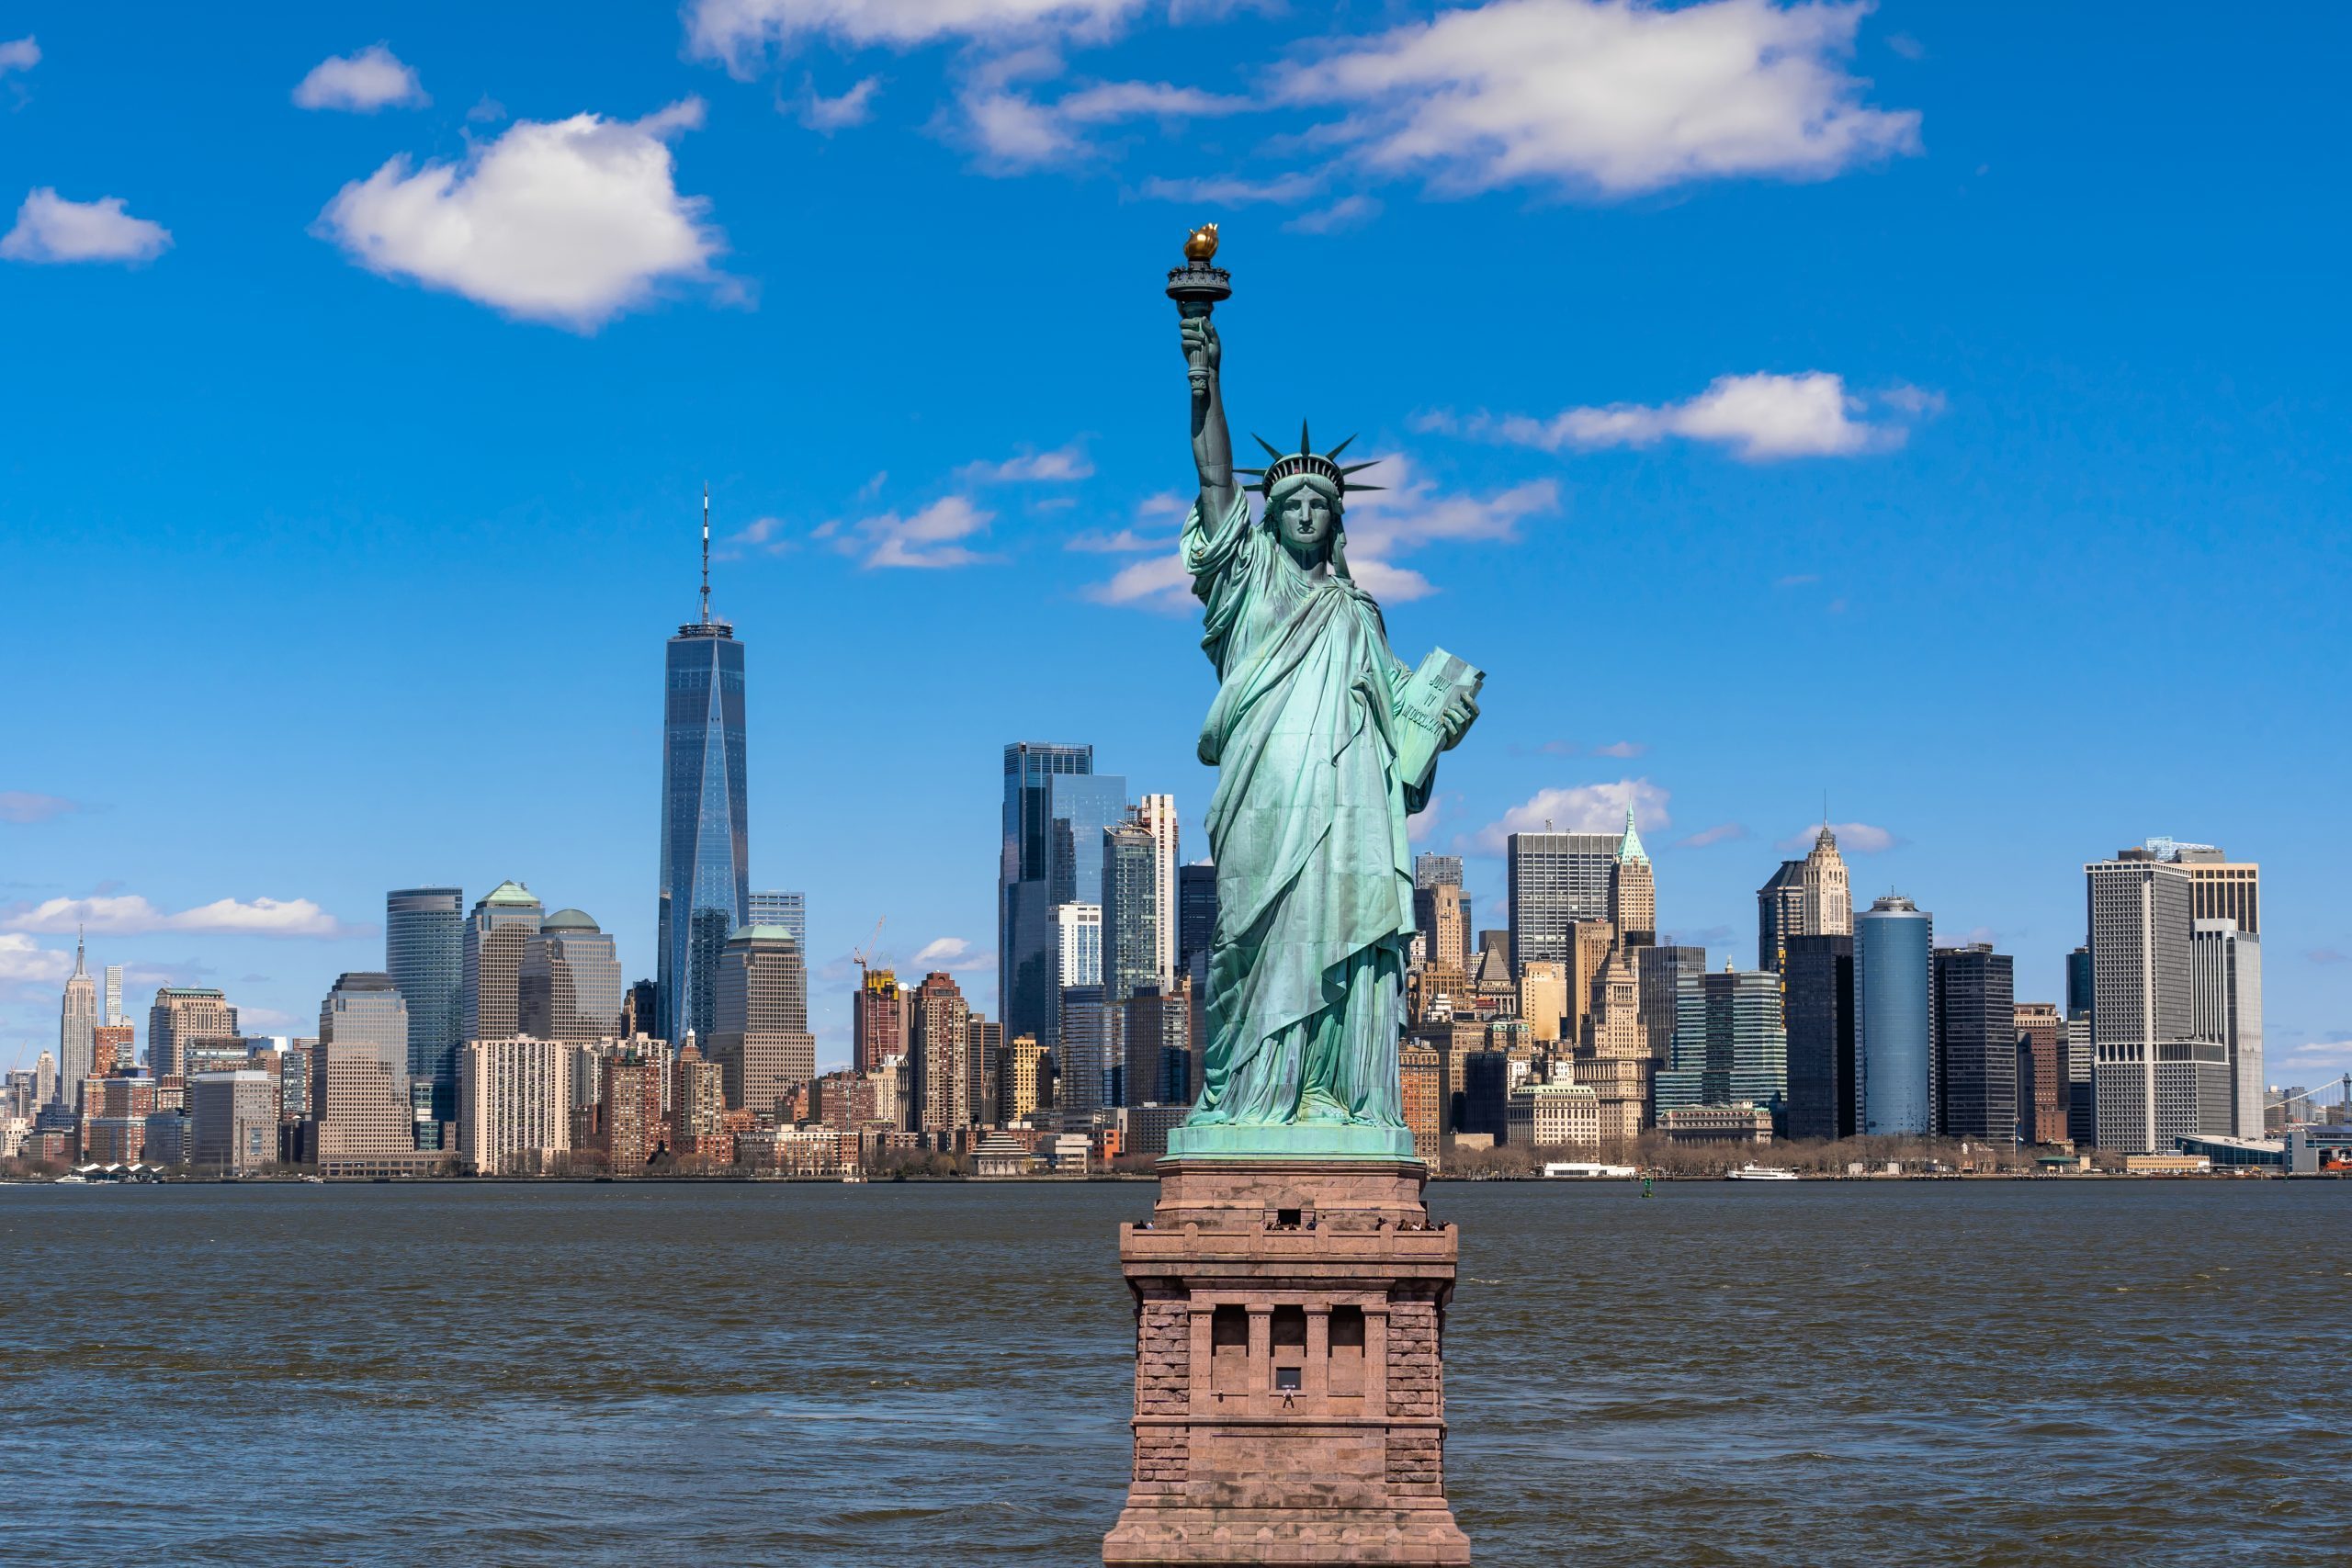 Reabren algunas atracciones turísticas en Nueva York con limitaciones